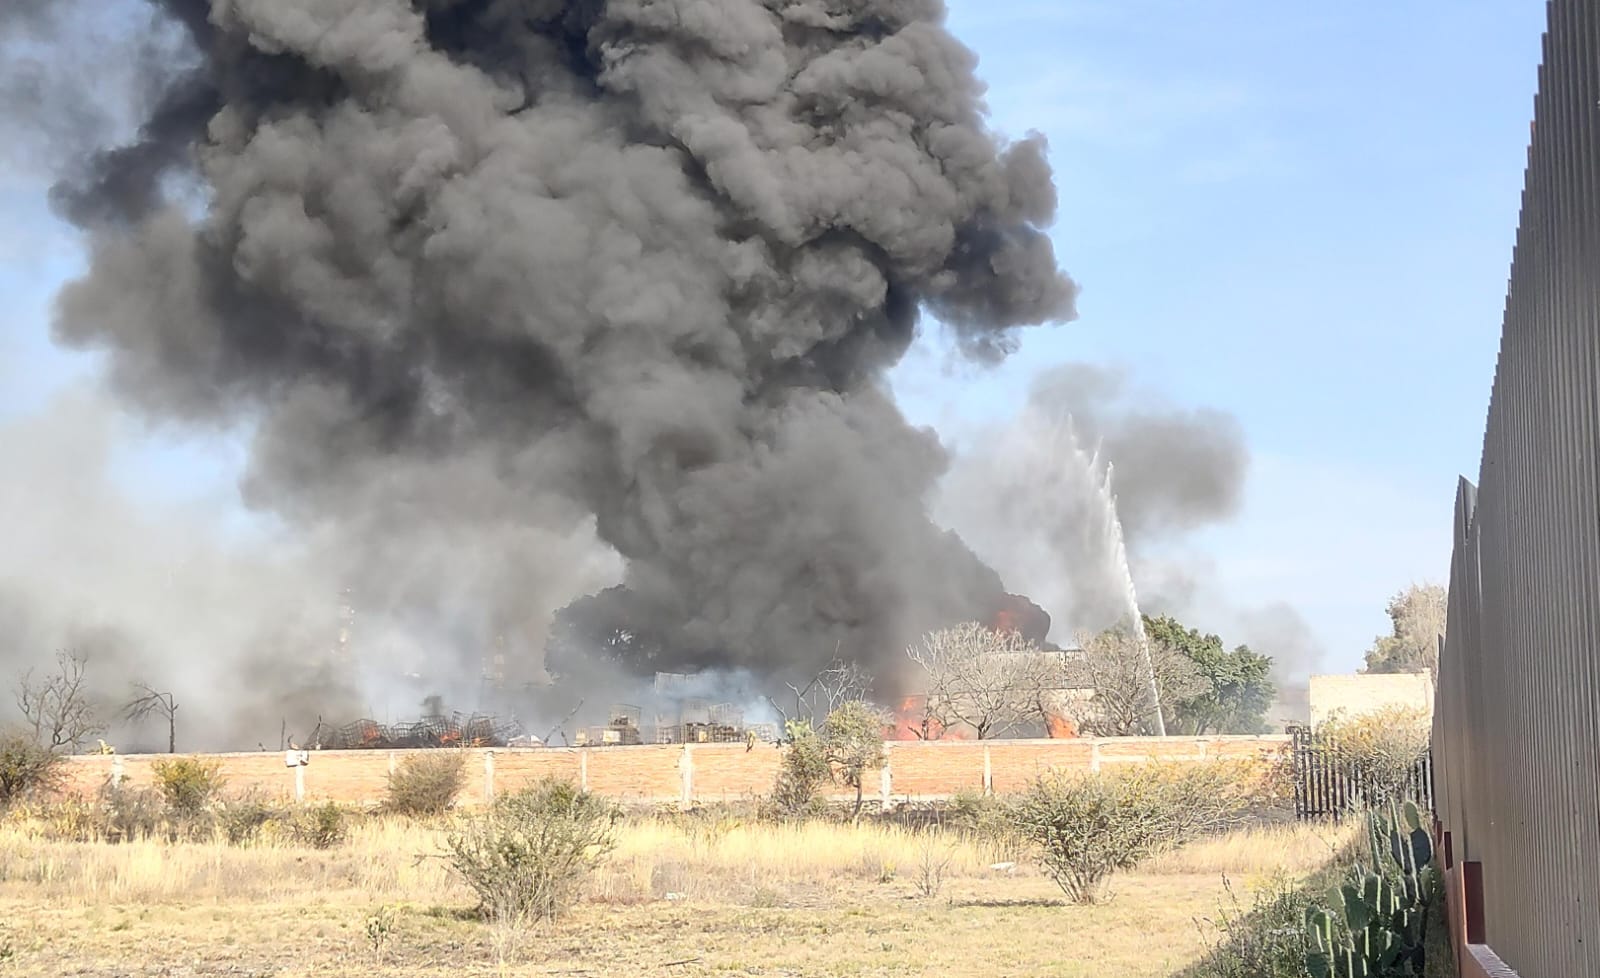 Arde recicladora en San José el Alto ubicada a espaldas del penal